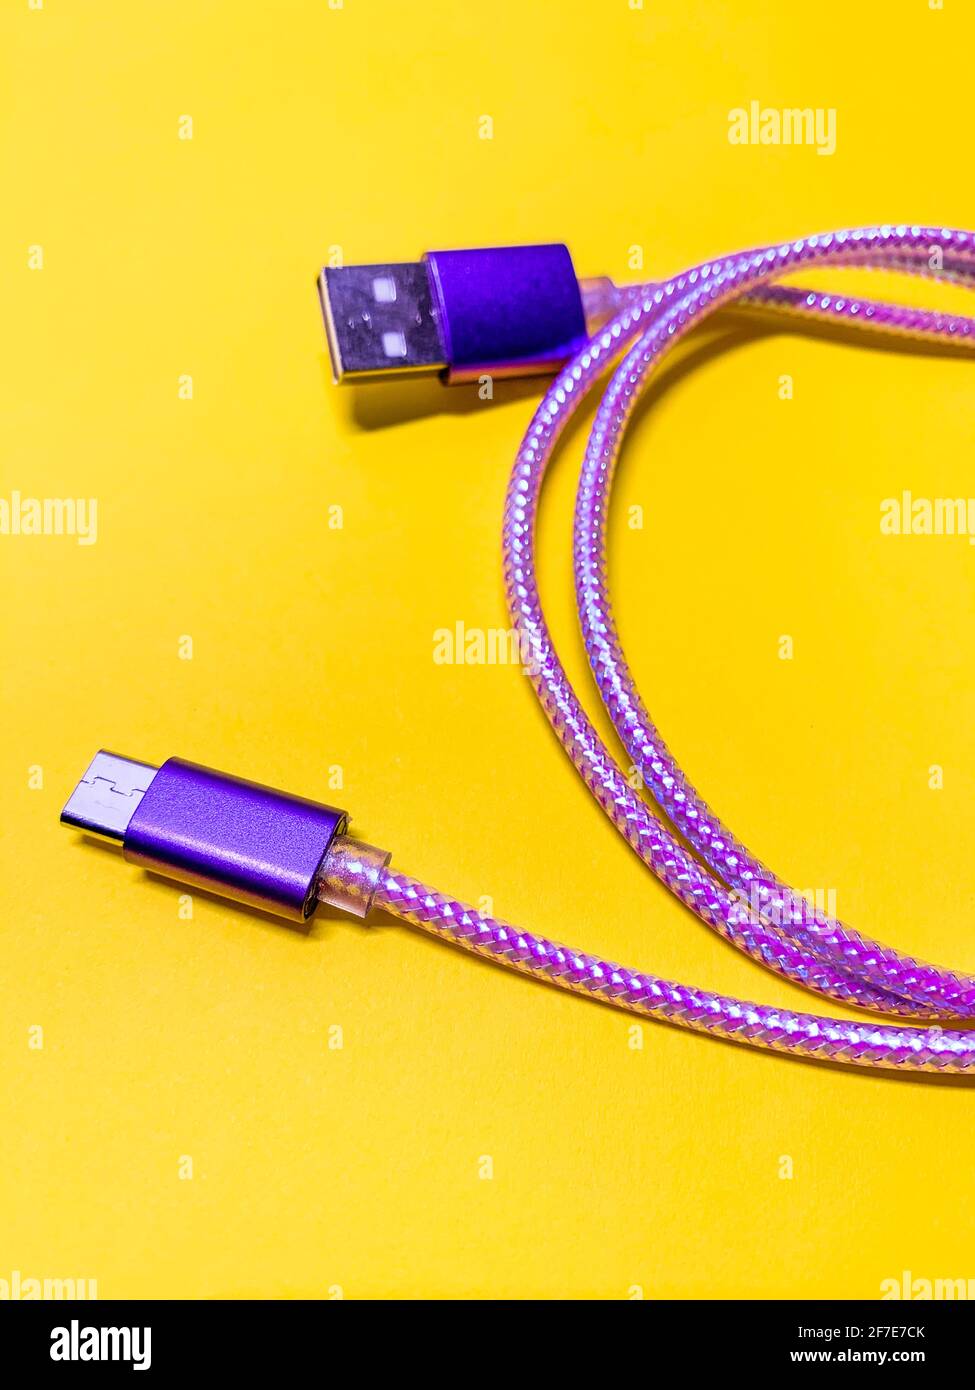 Nahaufnahme des violetten usb-Kabels auf gelbem Hintergrund, vertikale Ausrichtung Stockfoto